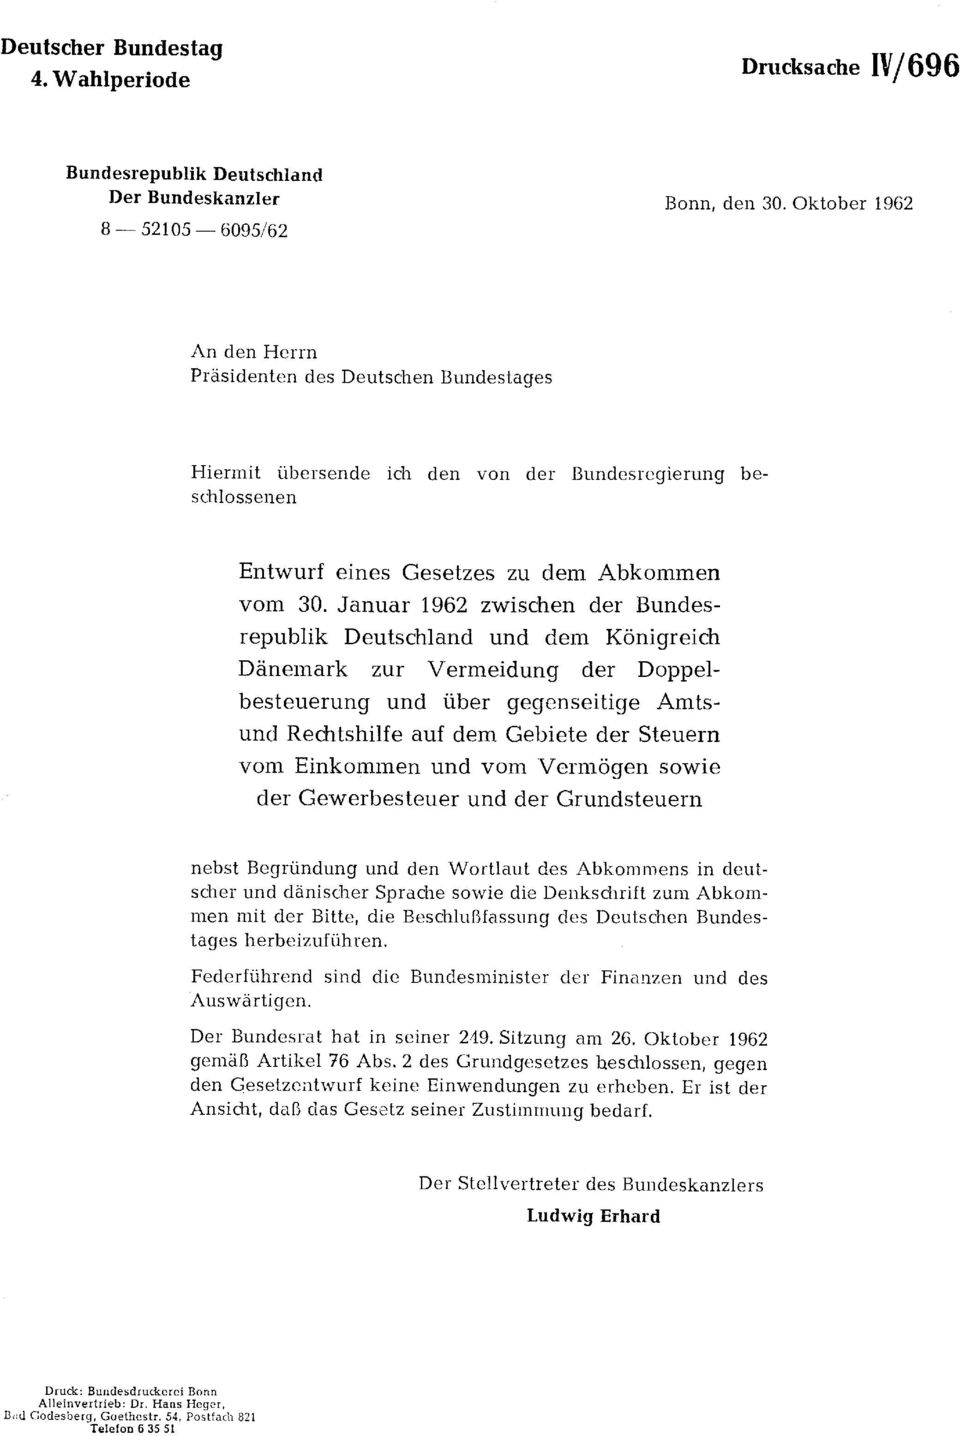 Januar 1962 zwischen der Bundesrepublik Deutschland und dem Königreich Dänemark zur Vermeidung der Doppelbesteuerung und über gegenseitige Amtsund Rechtshilfe auf dem Gebiete der Steuern vom